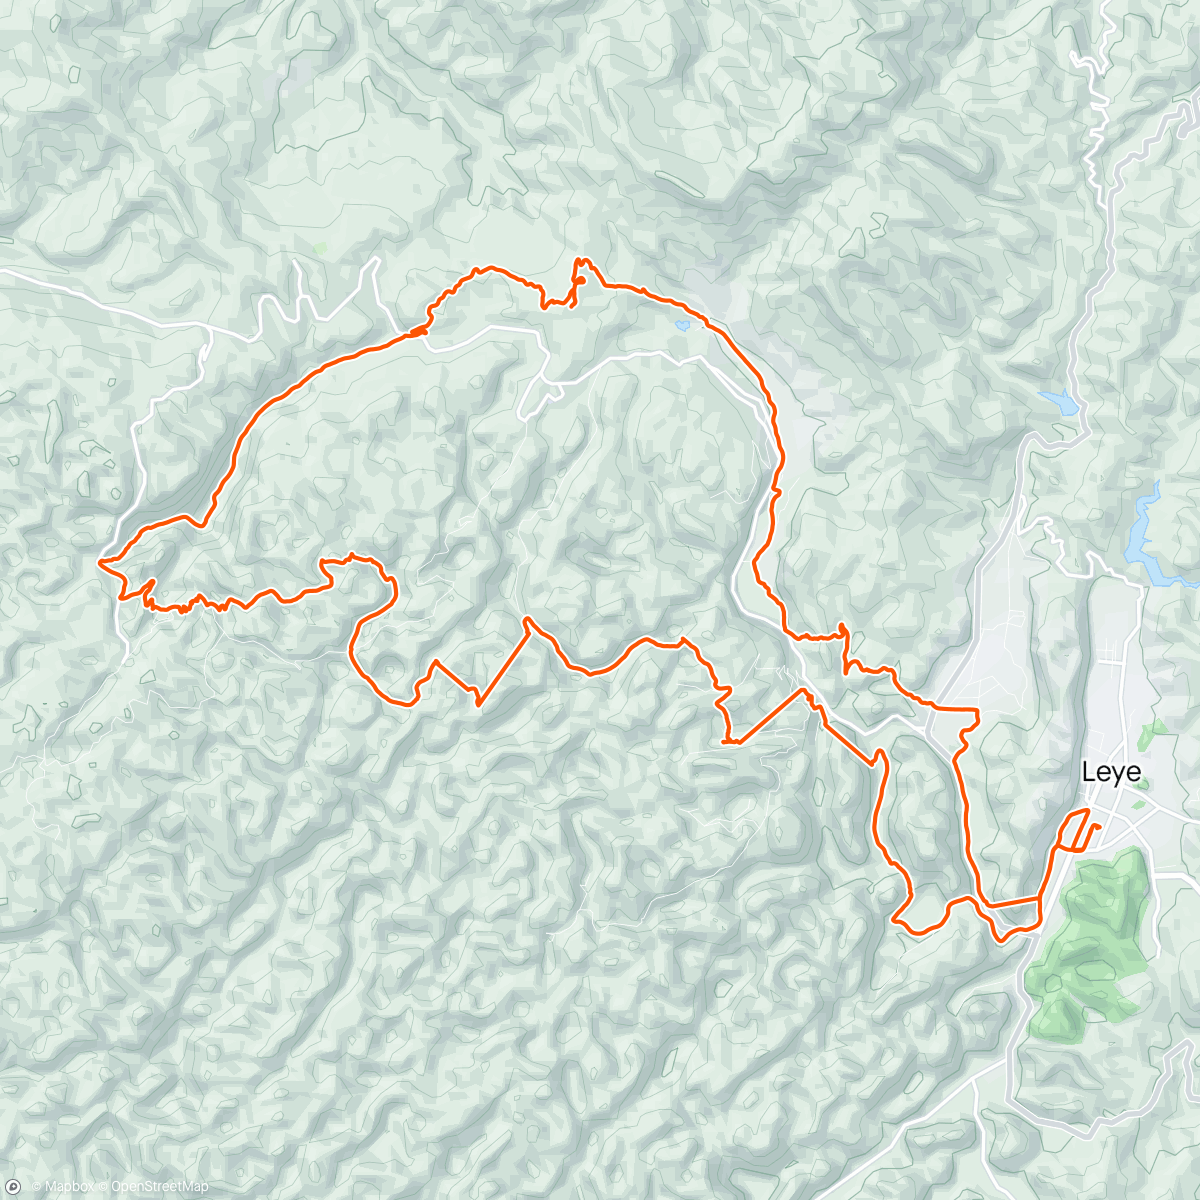 アクティビティ「Baise Leye cave trail run」の地図